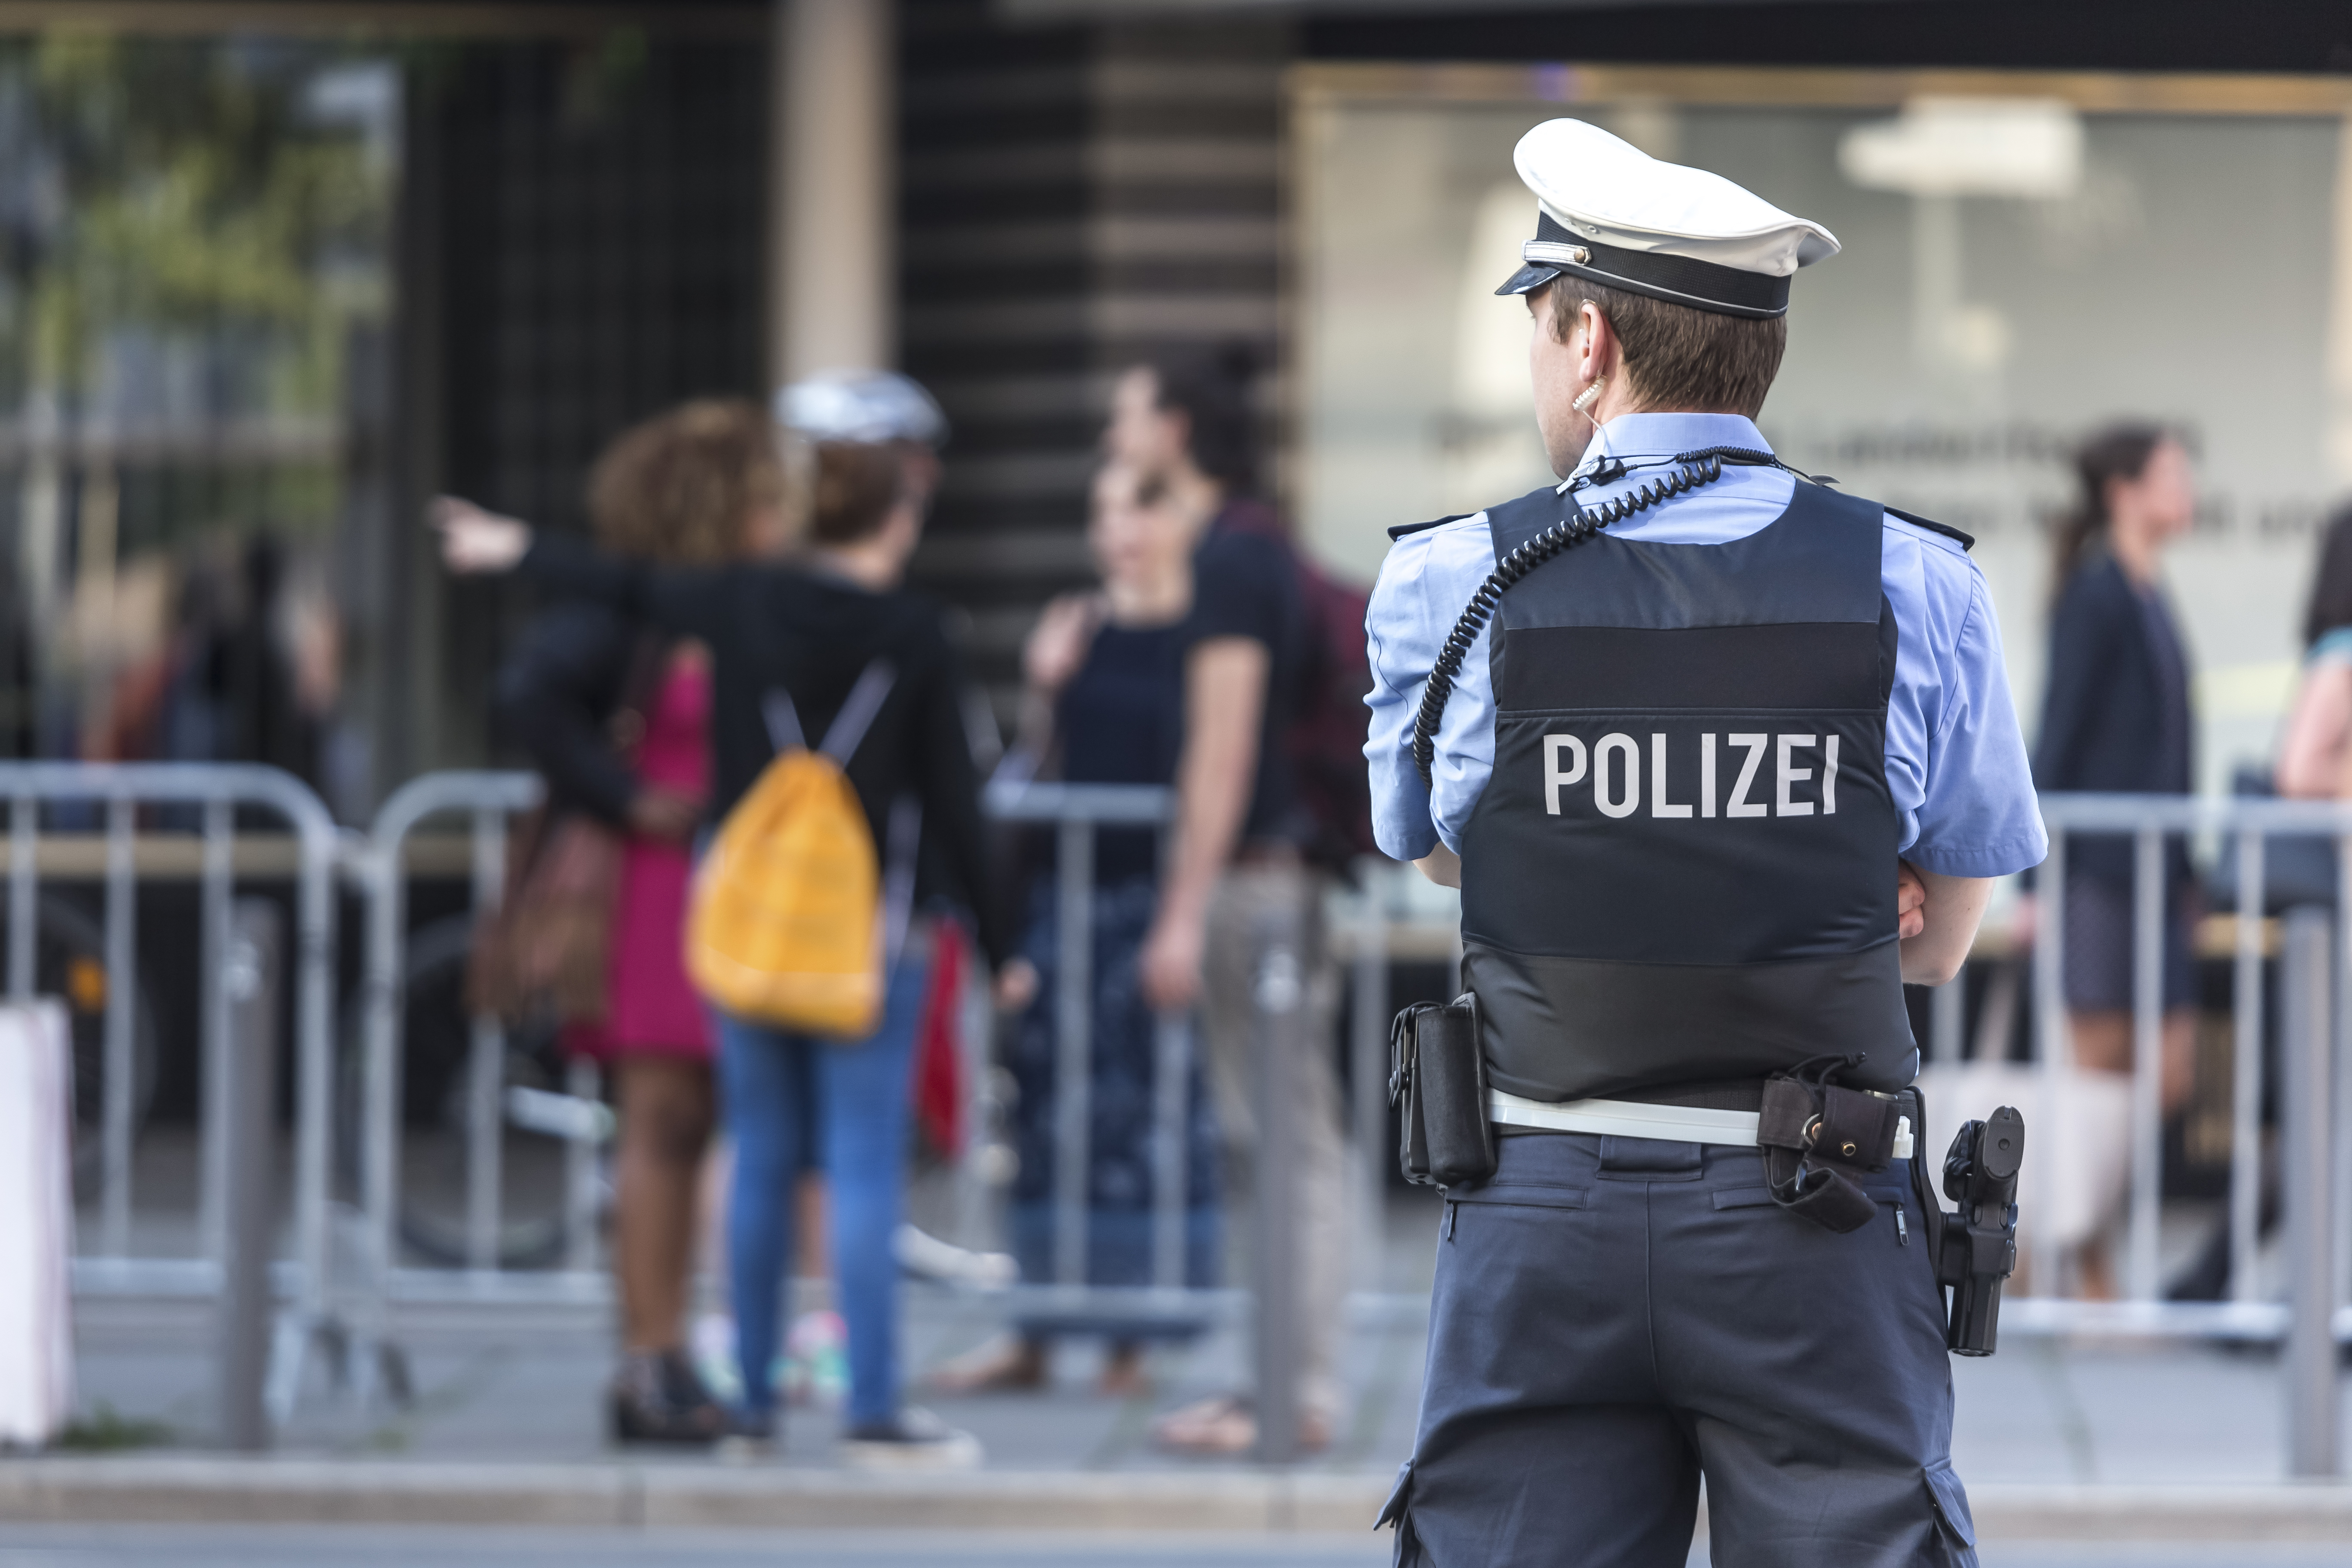 Полицията в Германия застреля нападател с нож